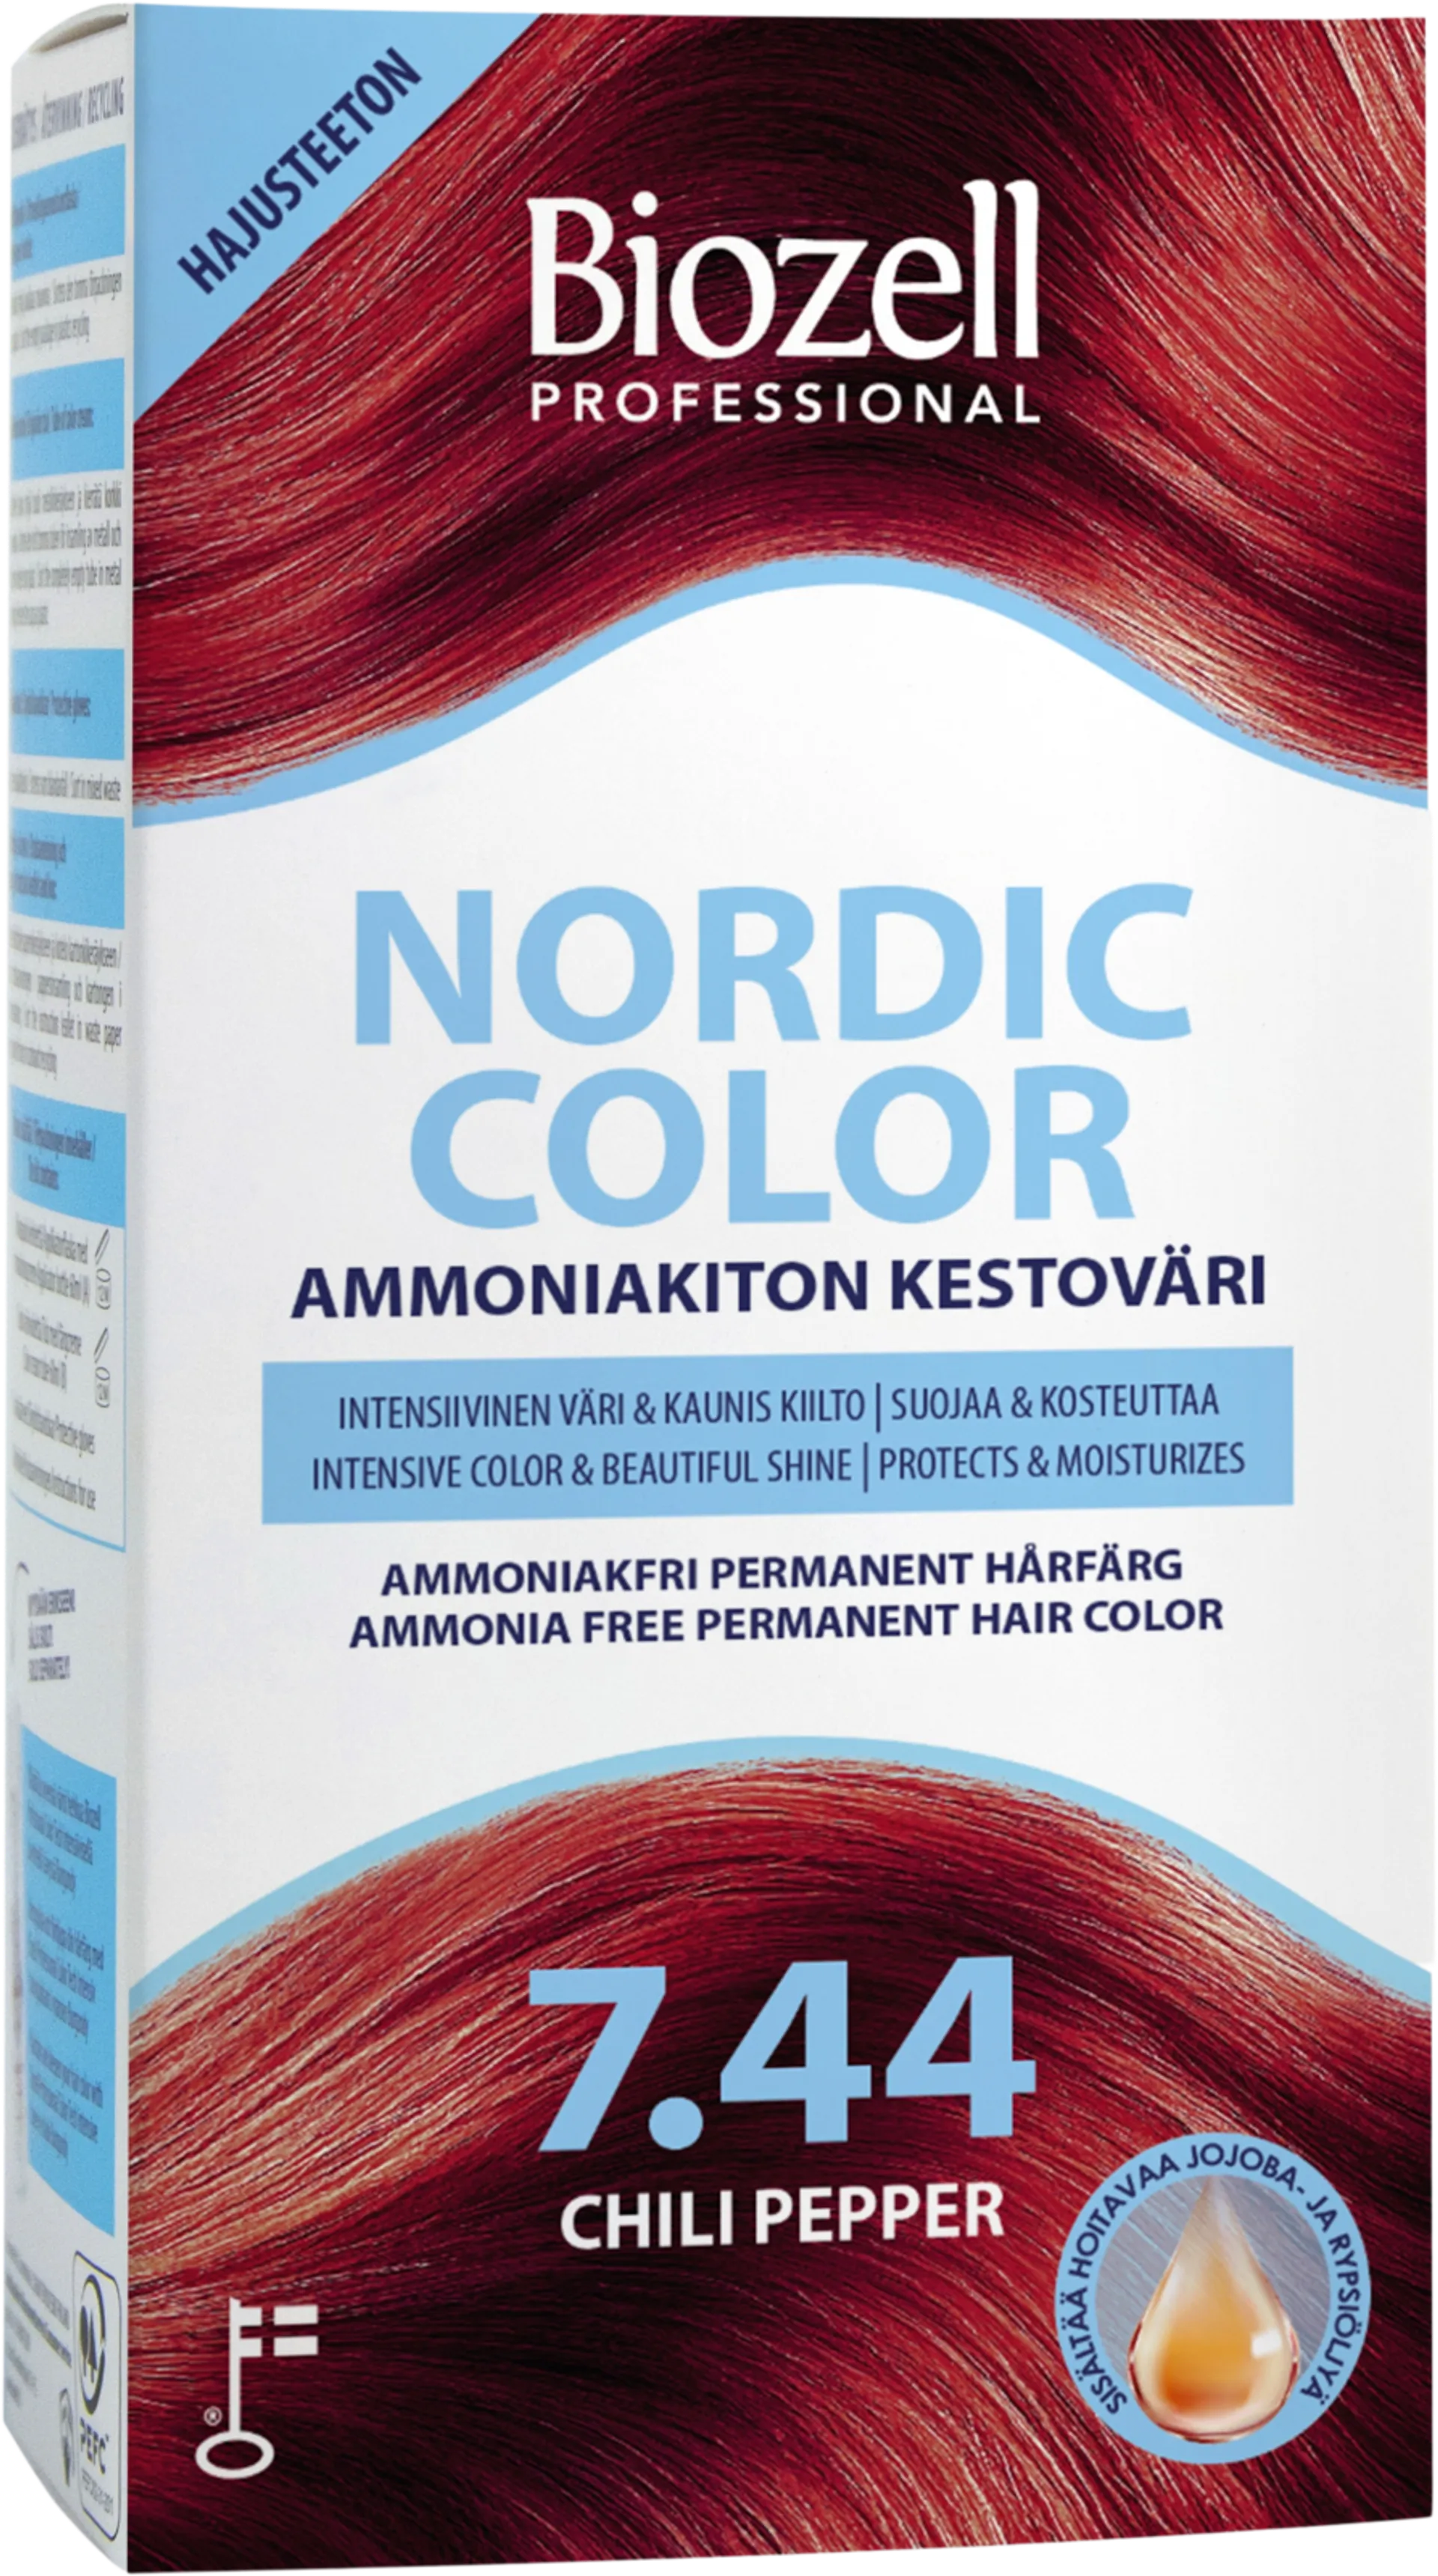 Biozell Professional Nordic Color ammoniakiton kestoväri Chili Pepper 7.44 2x60ml